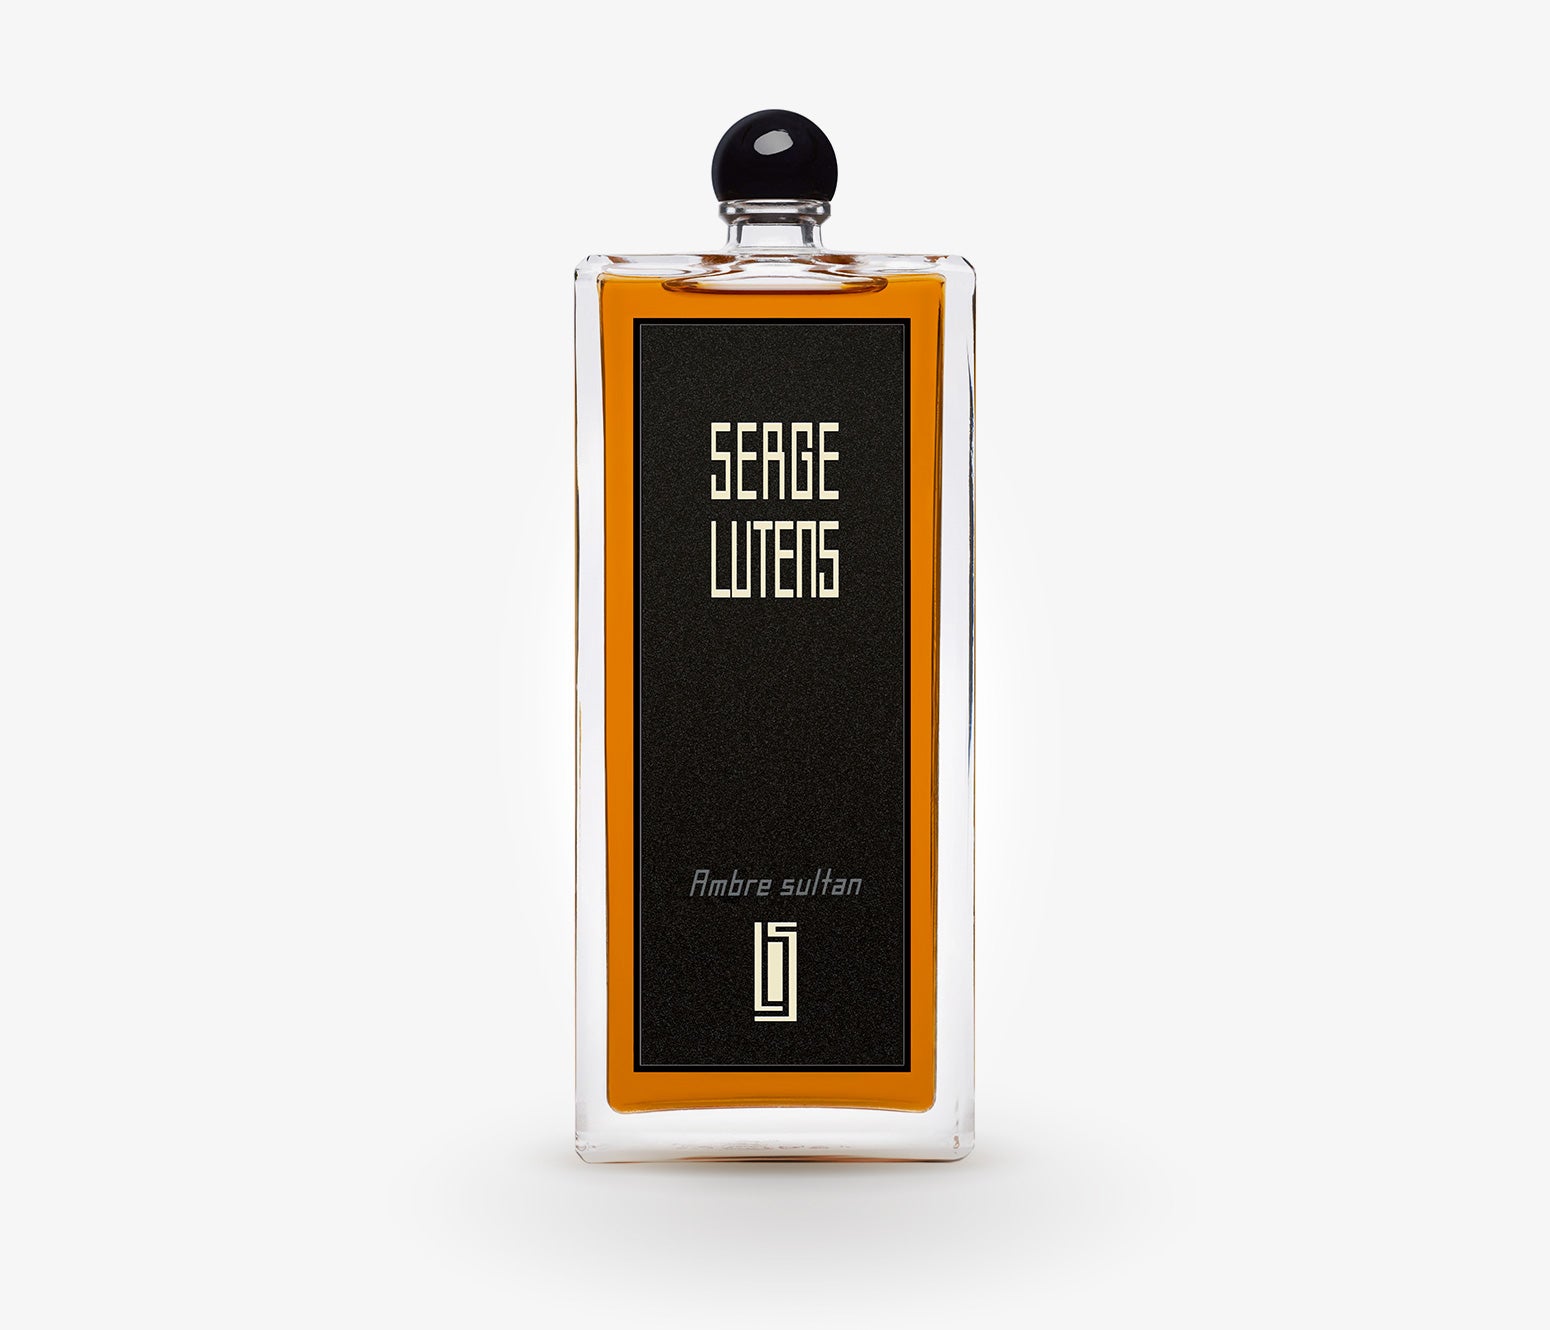 Serge Lutens - Ambre Sultan - 100ml - IAR001 - product image - Fragrance - Les Senteurs